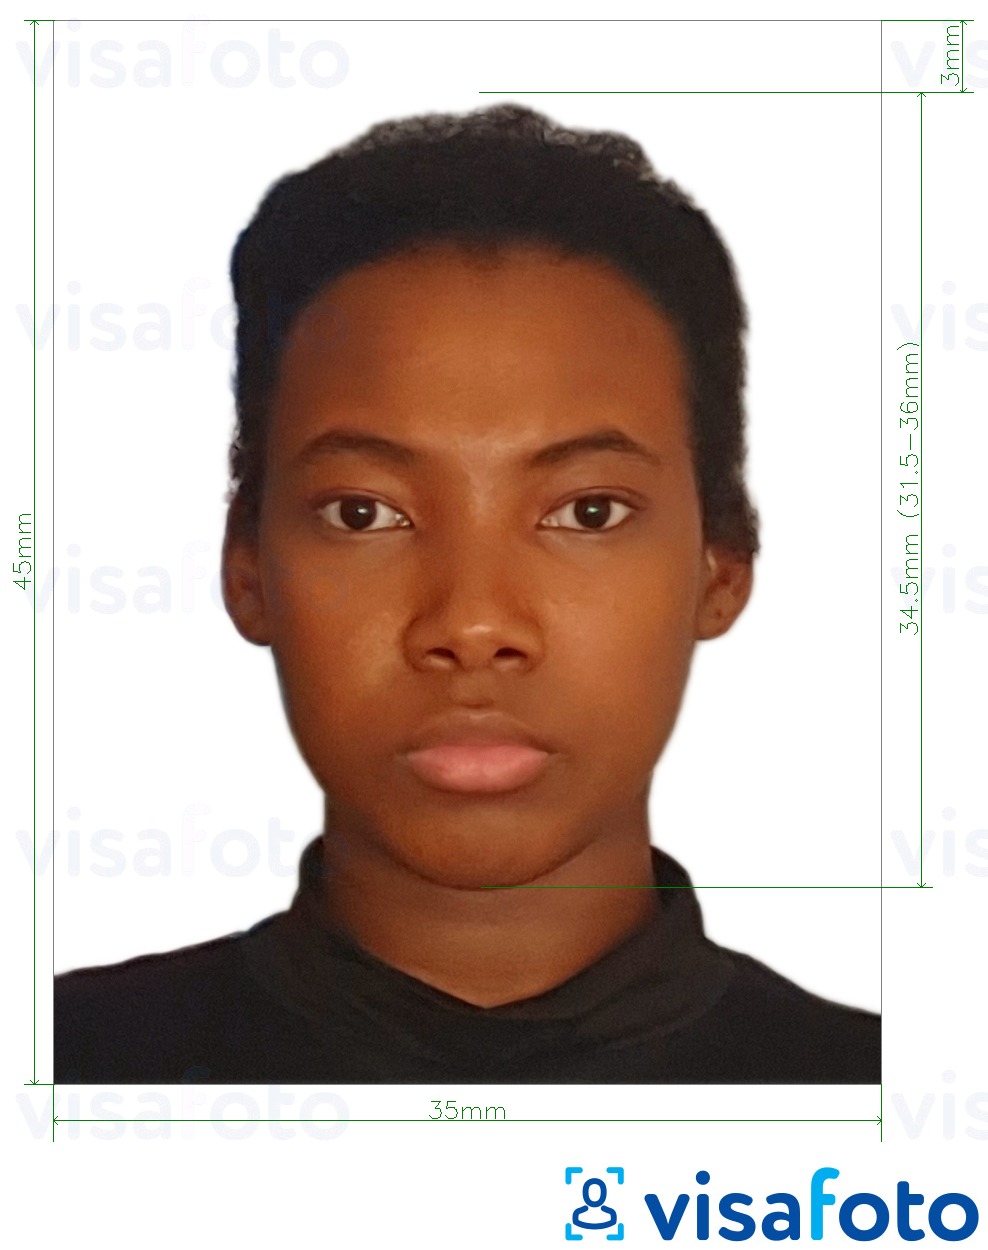 Contoh dari foto untuk Paspor Kamerun 35x45 mm (3,5x4,5 cm) dengan ukuran spesifikasi yang tepat